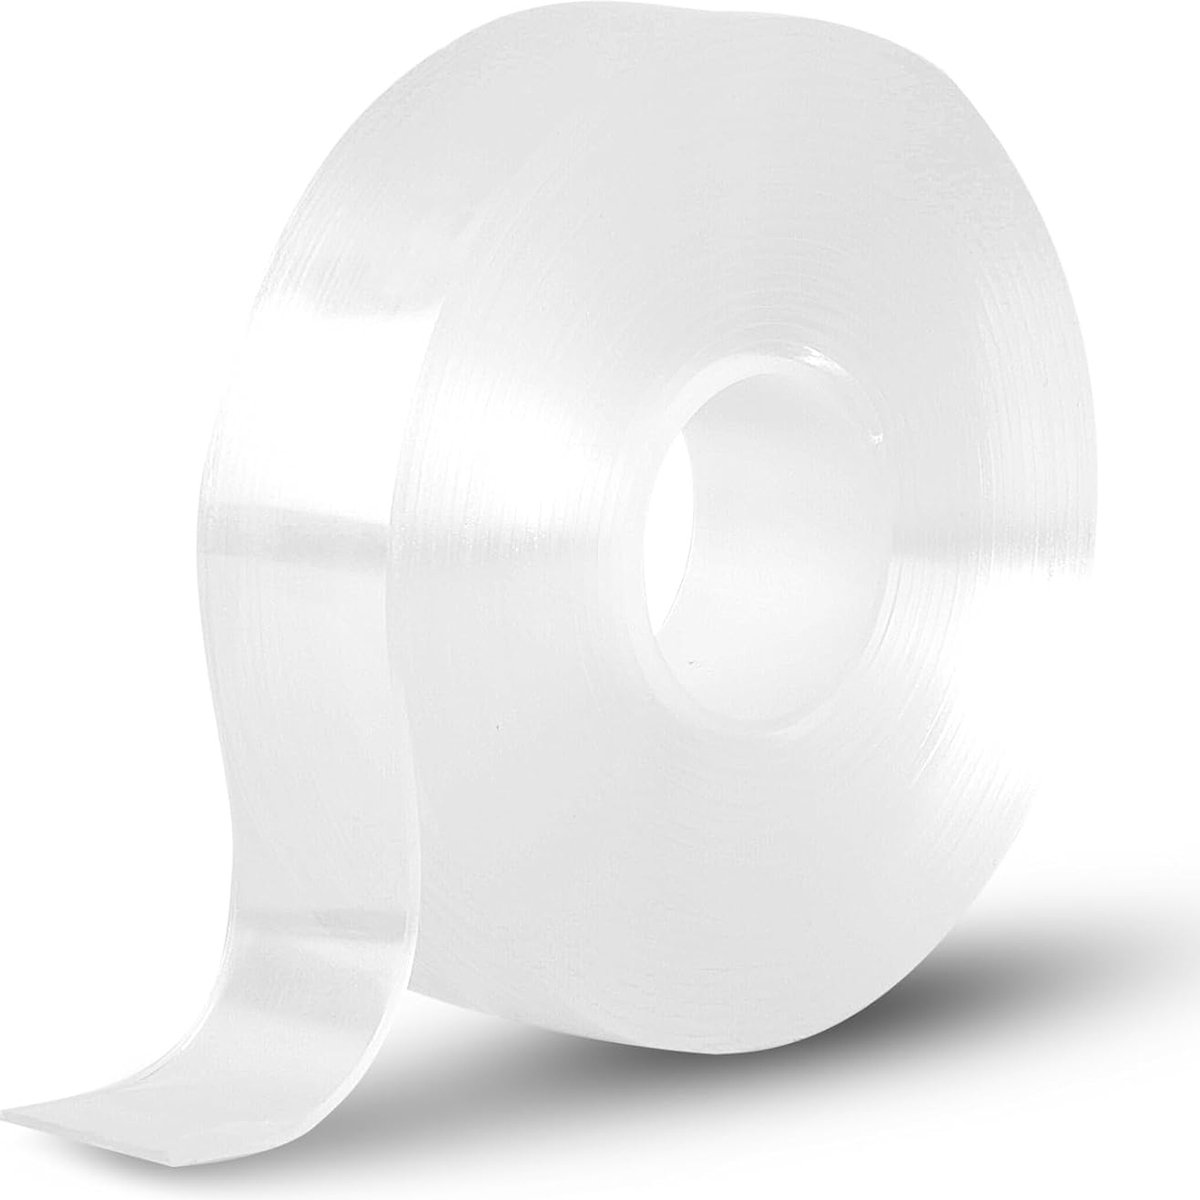 (3 stuks )Dubbelzijdig plakband, transparant, 5 m nano-dubbelzijdige tape, 3 cm breed en 2 mm dik dubbelzijdig plakband voor tapijt, fotolijst, keuken, thuis, auto of outdoor